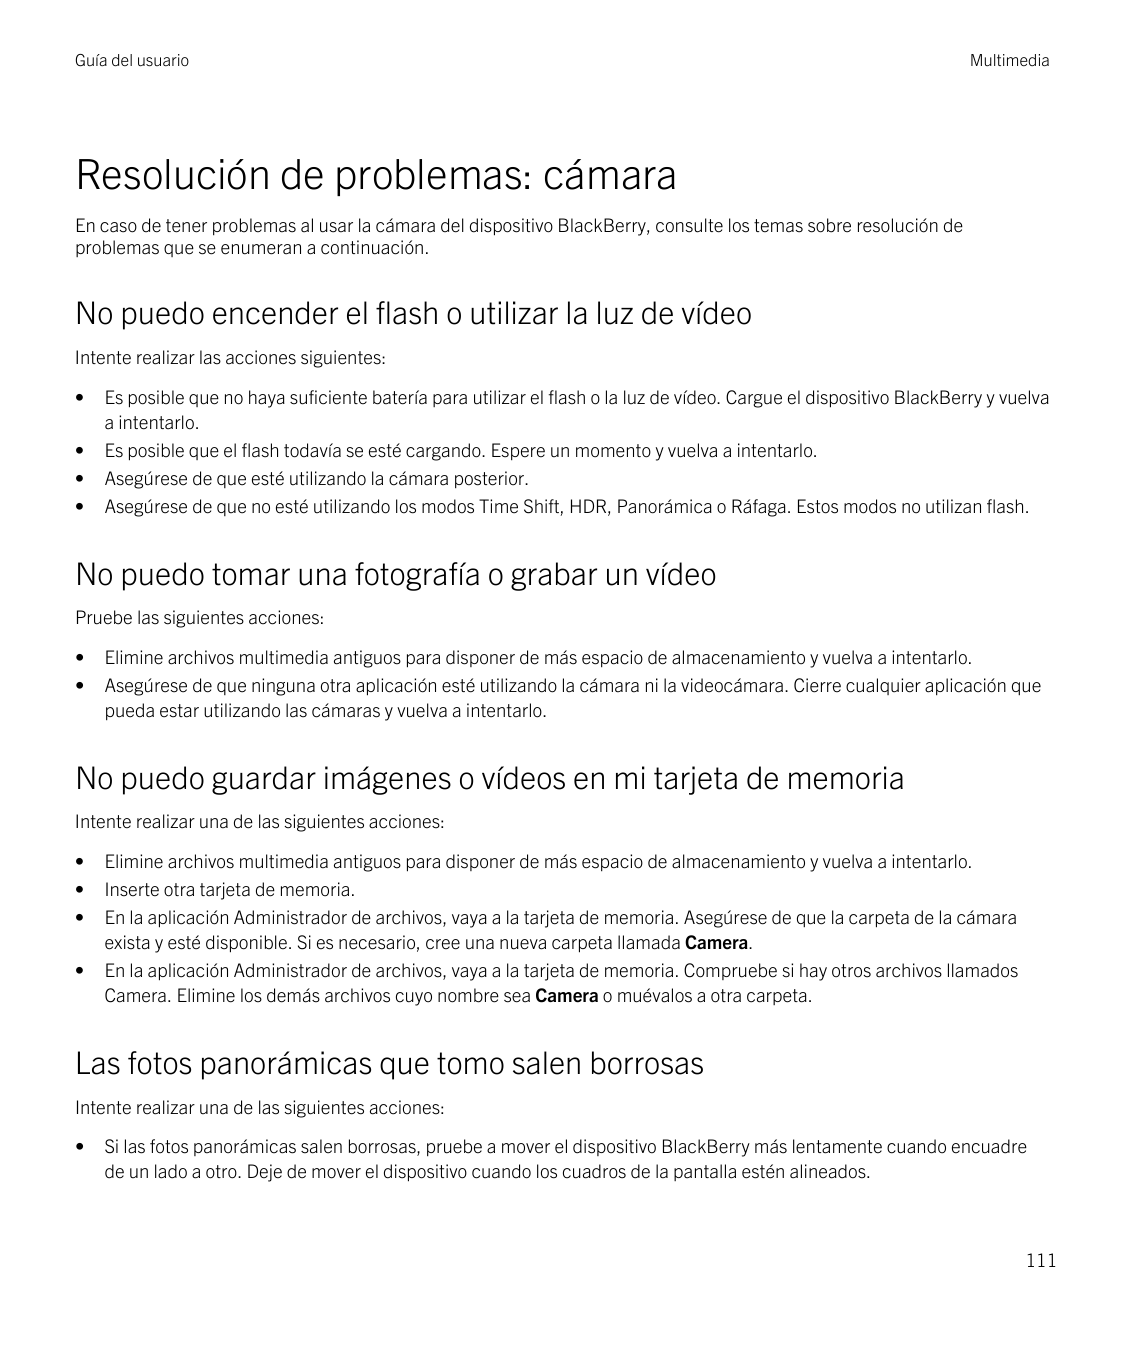 Guía del usuarioMultimediaResolución de problemas: cámaraEn caso de tener problemas al usar la cámara del dispositivo BlackBerry